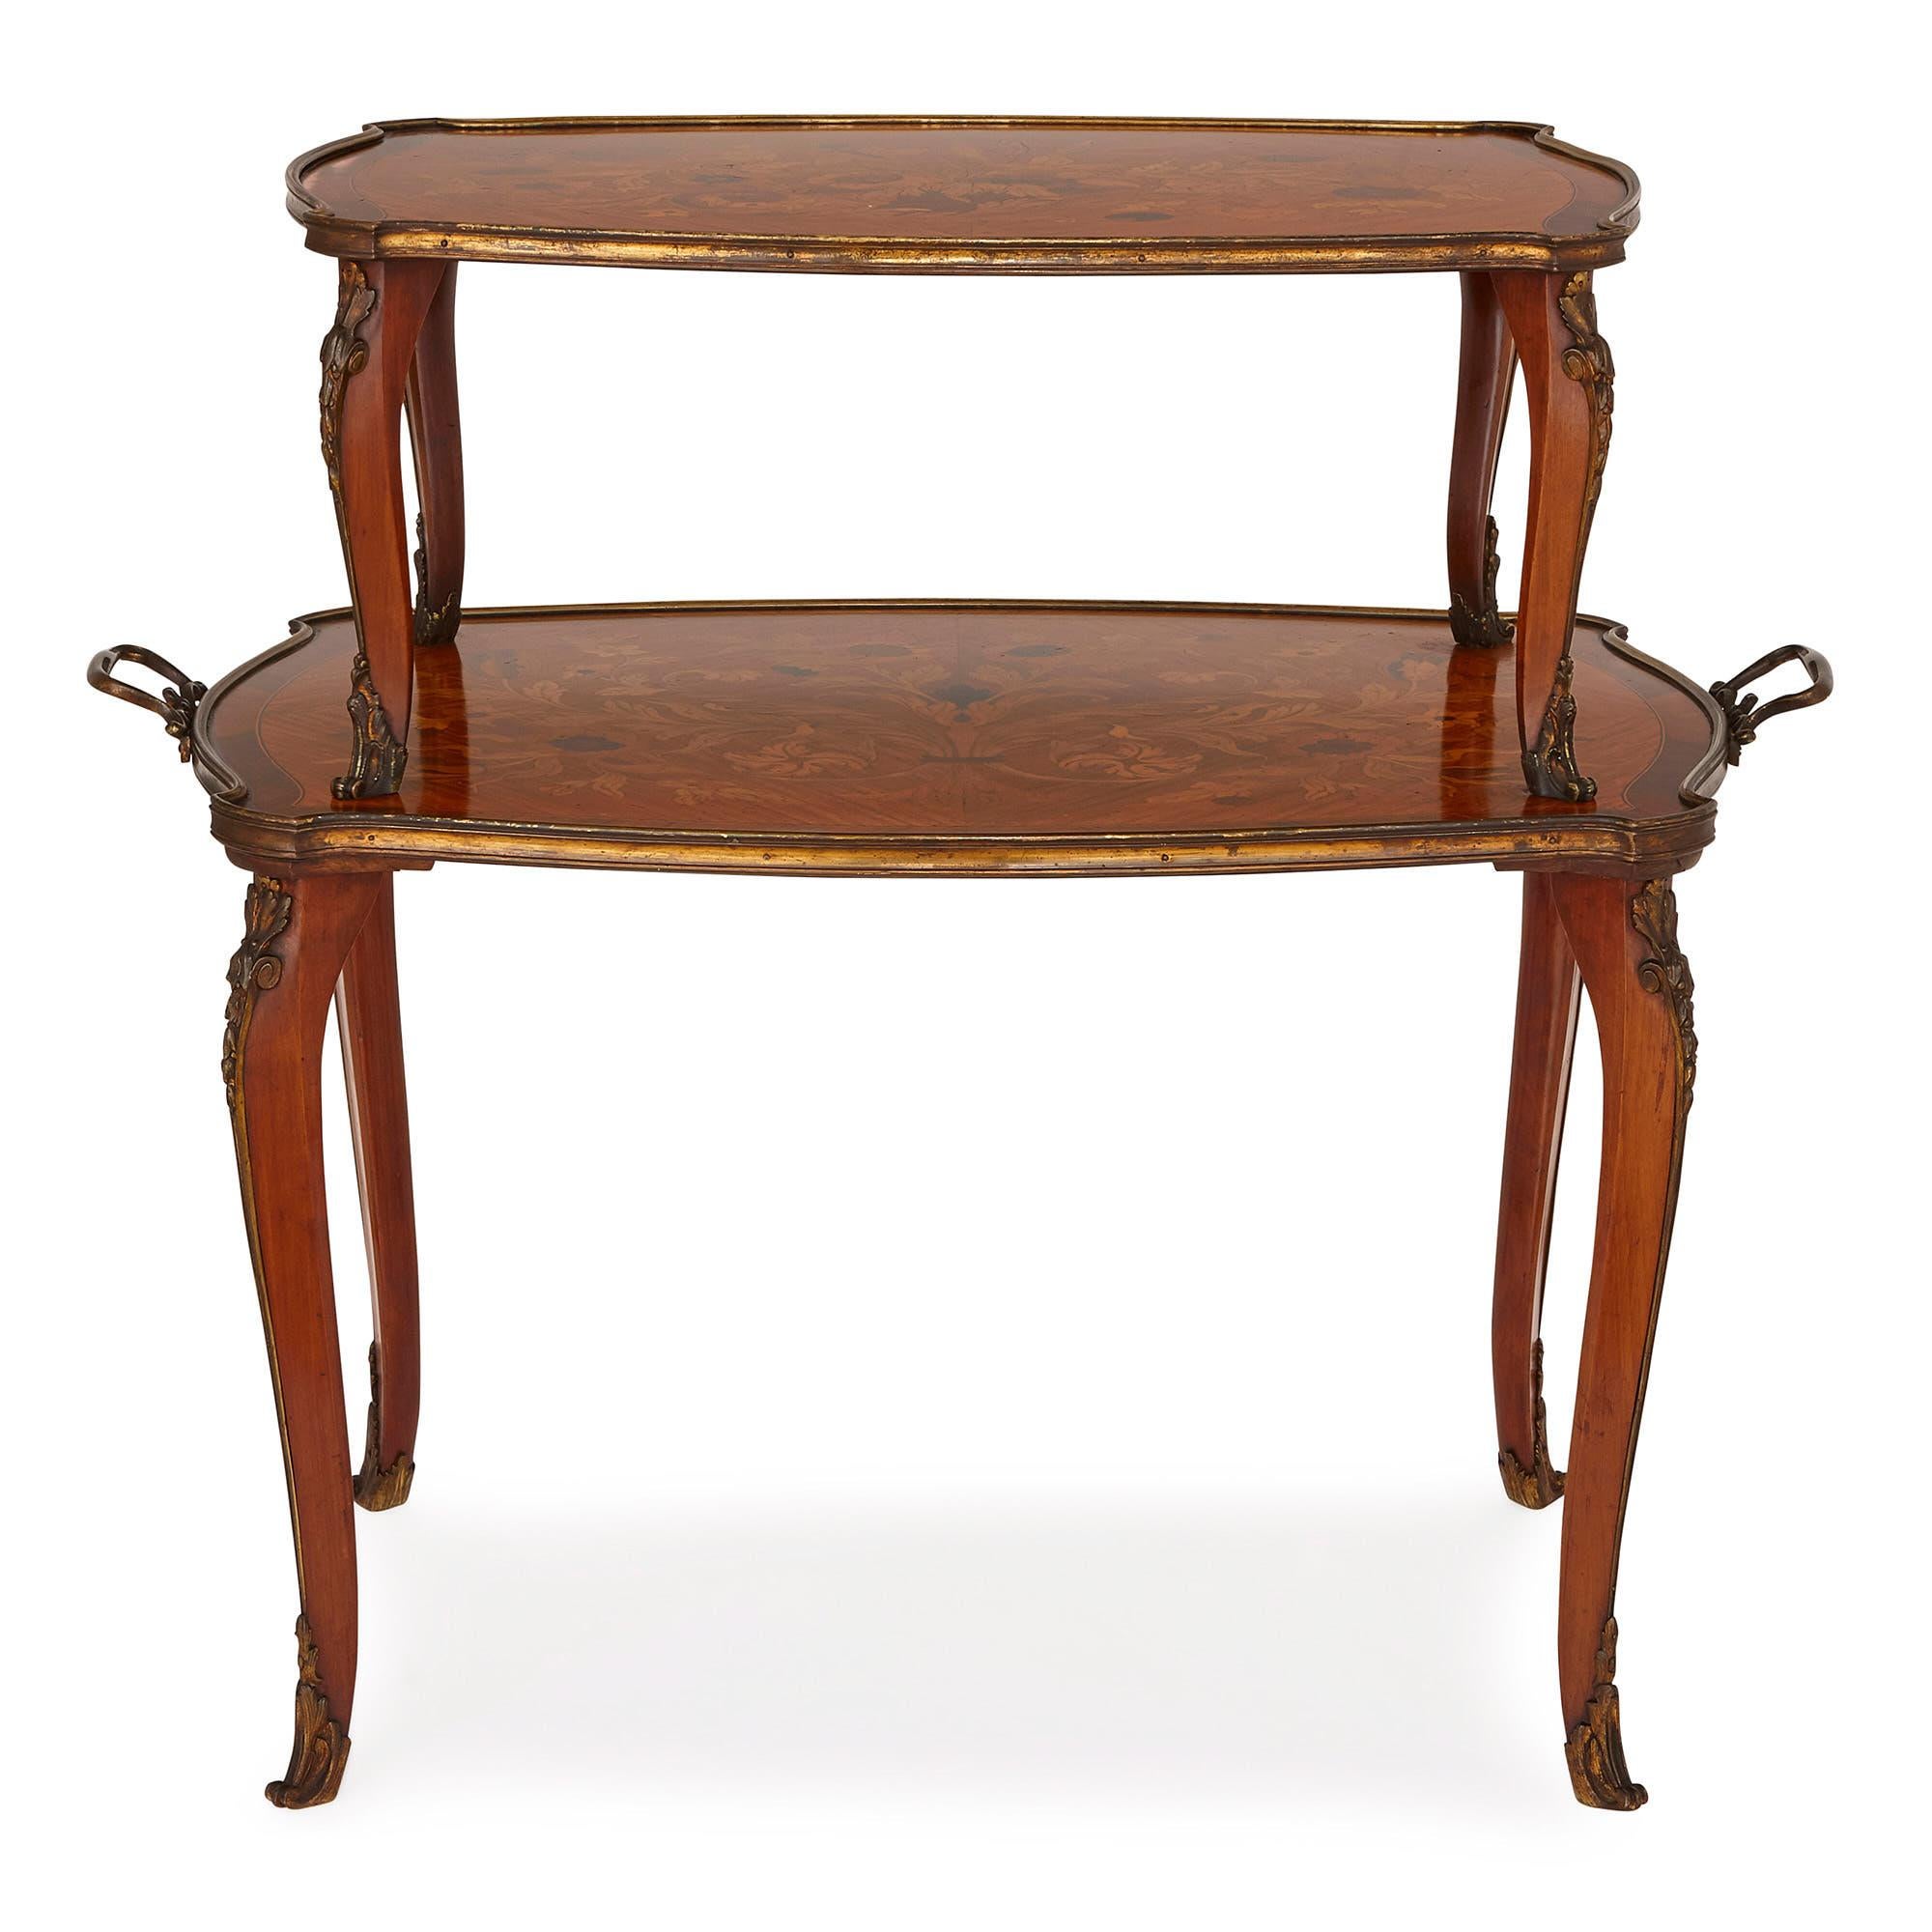 Cette magnifique table a été créée en Angleterre à l'époque victorienne par les célèbres ébénistes Edwards & Roberts. La société était basée à Londres, où elle s'est fait un nom en créant des pièces de qualité et à la mode dans les styles anglais et